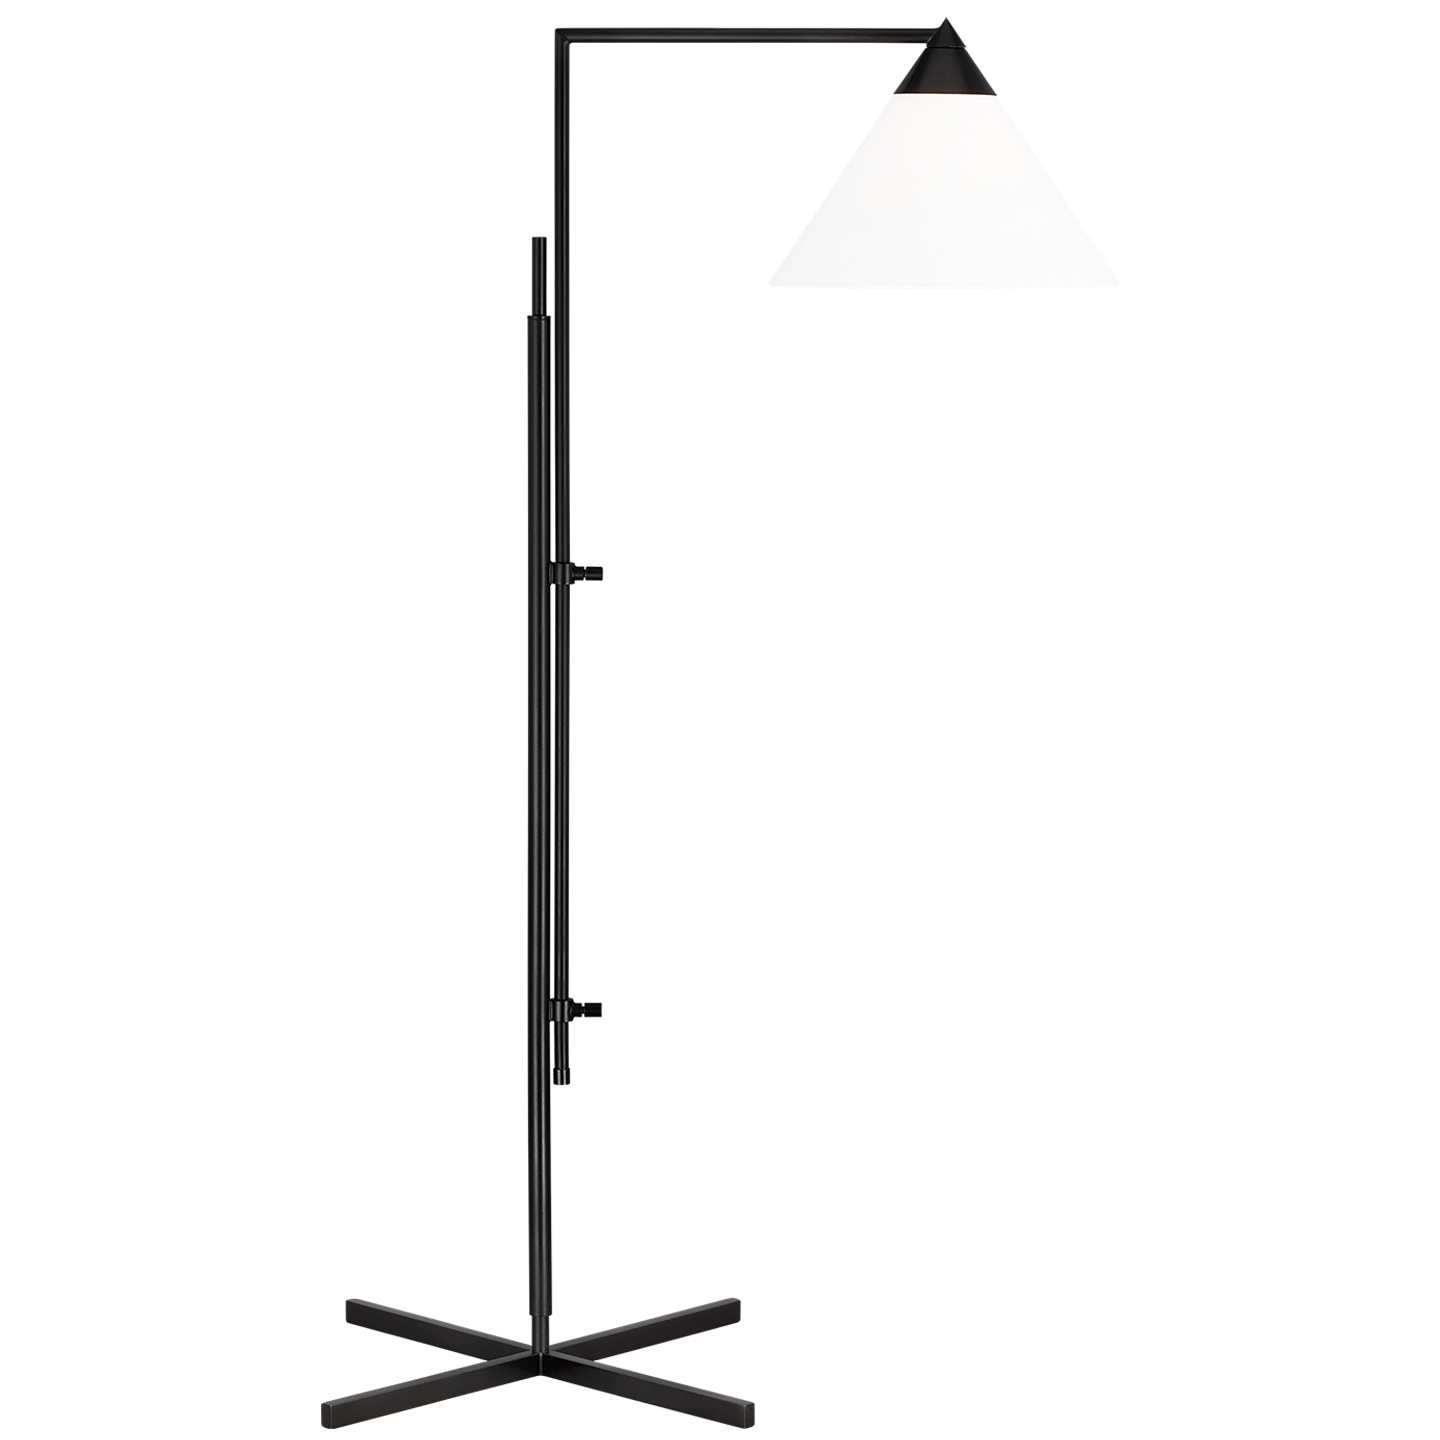 Franklin 1-Light Task Floor Lamp